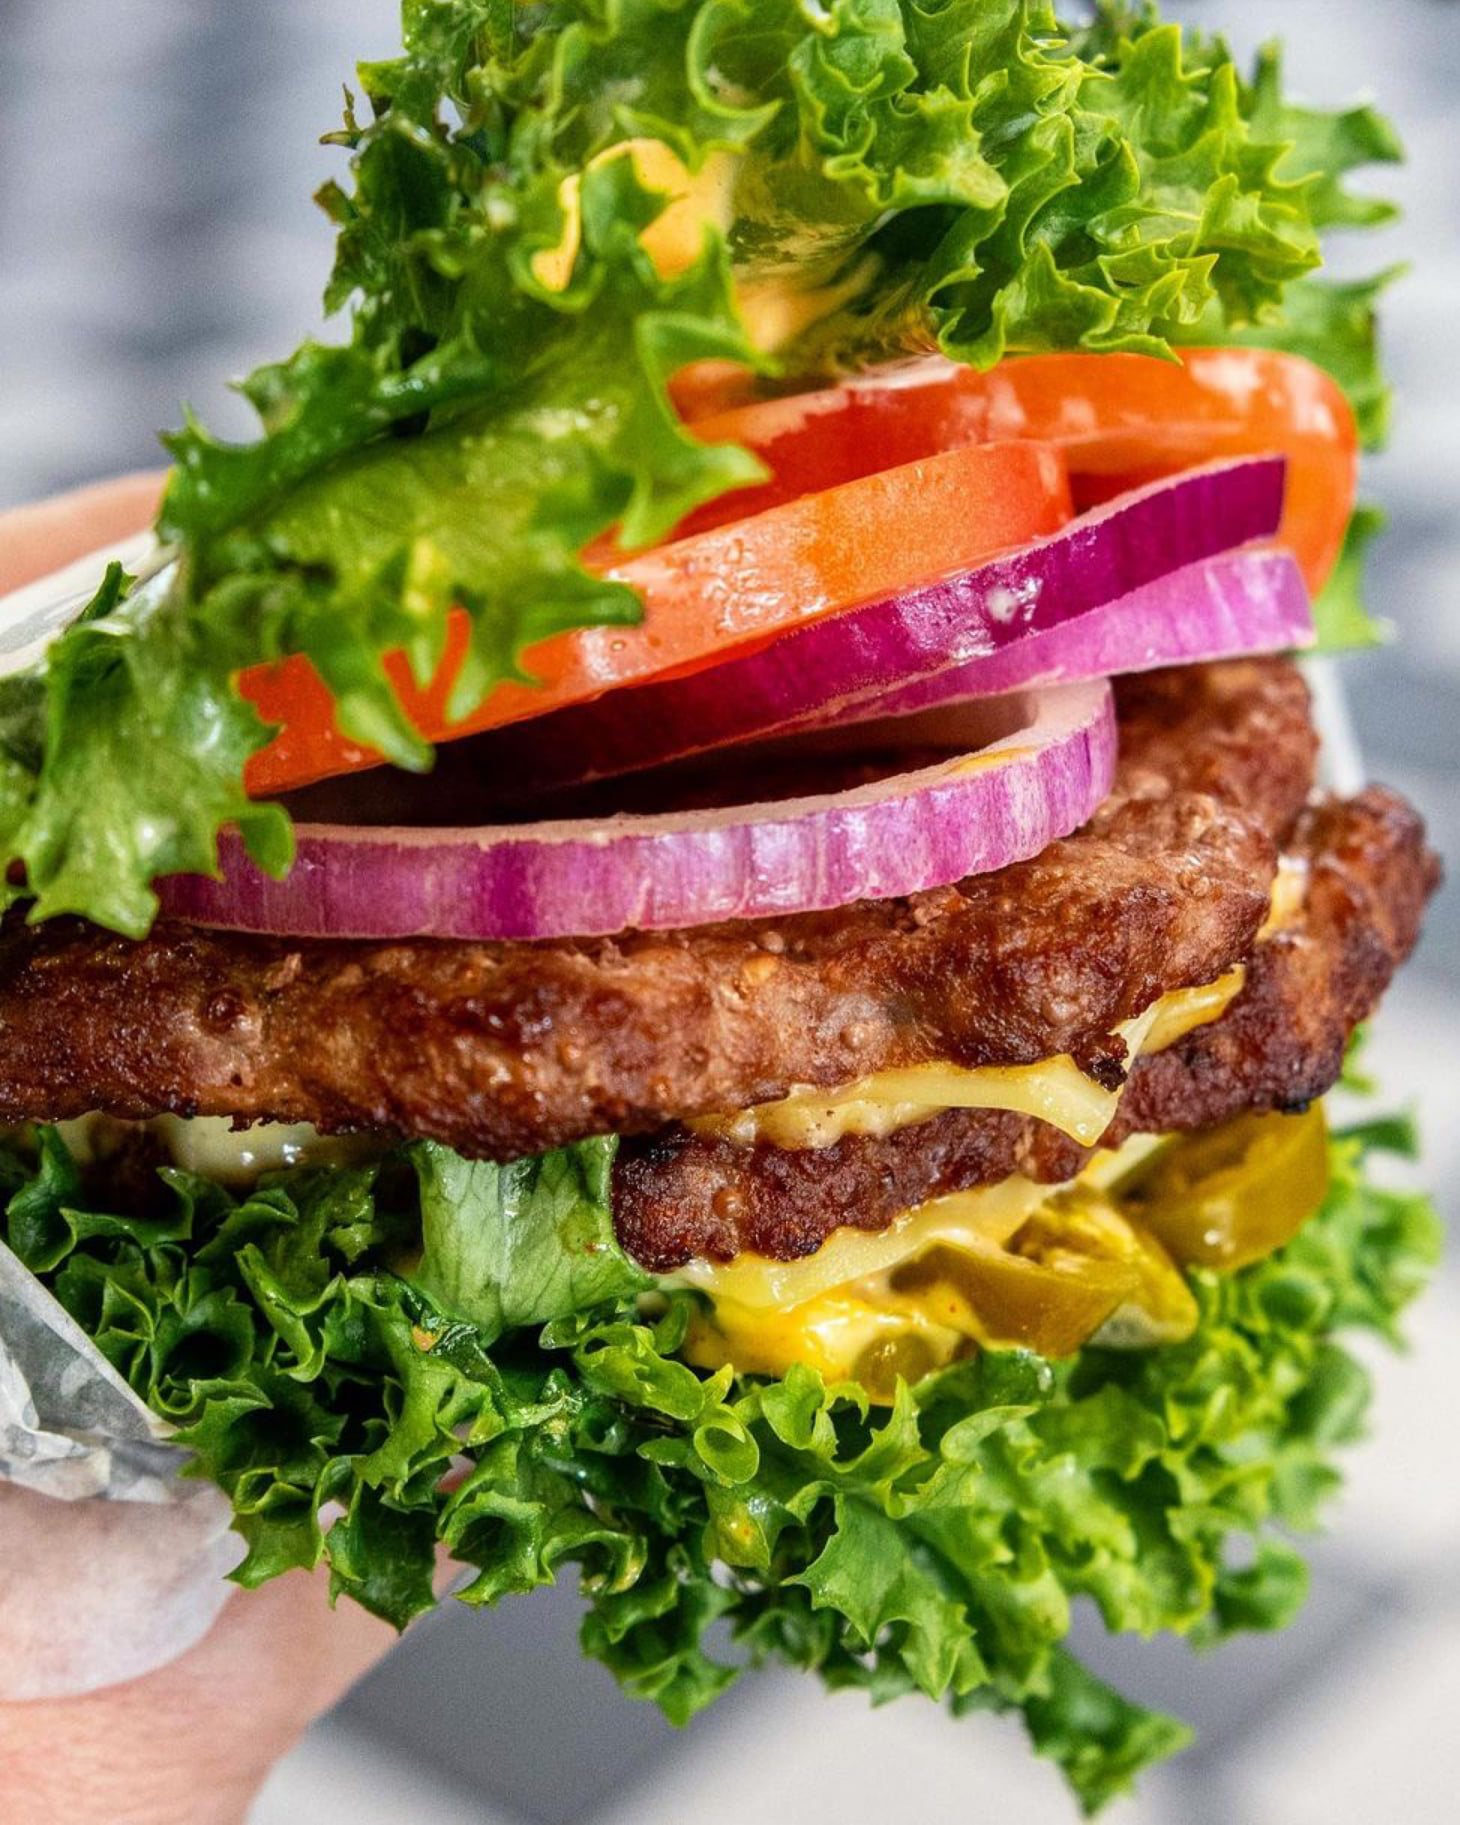 carl's jr lettuce wrap burger gluten free